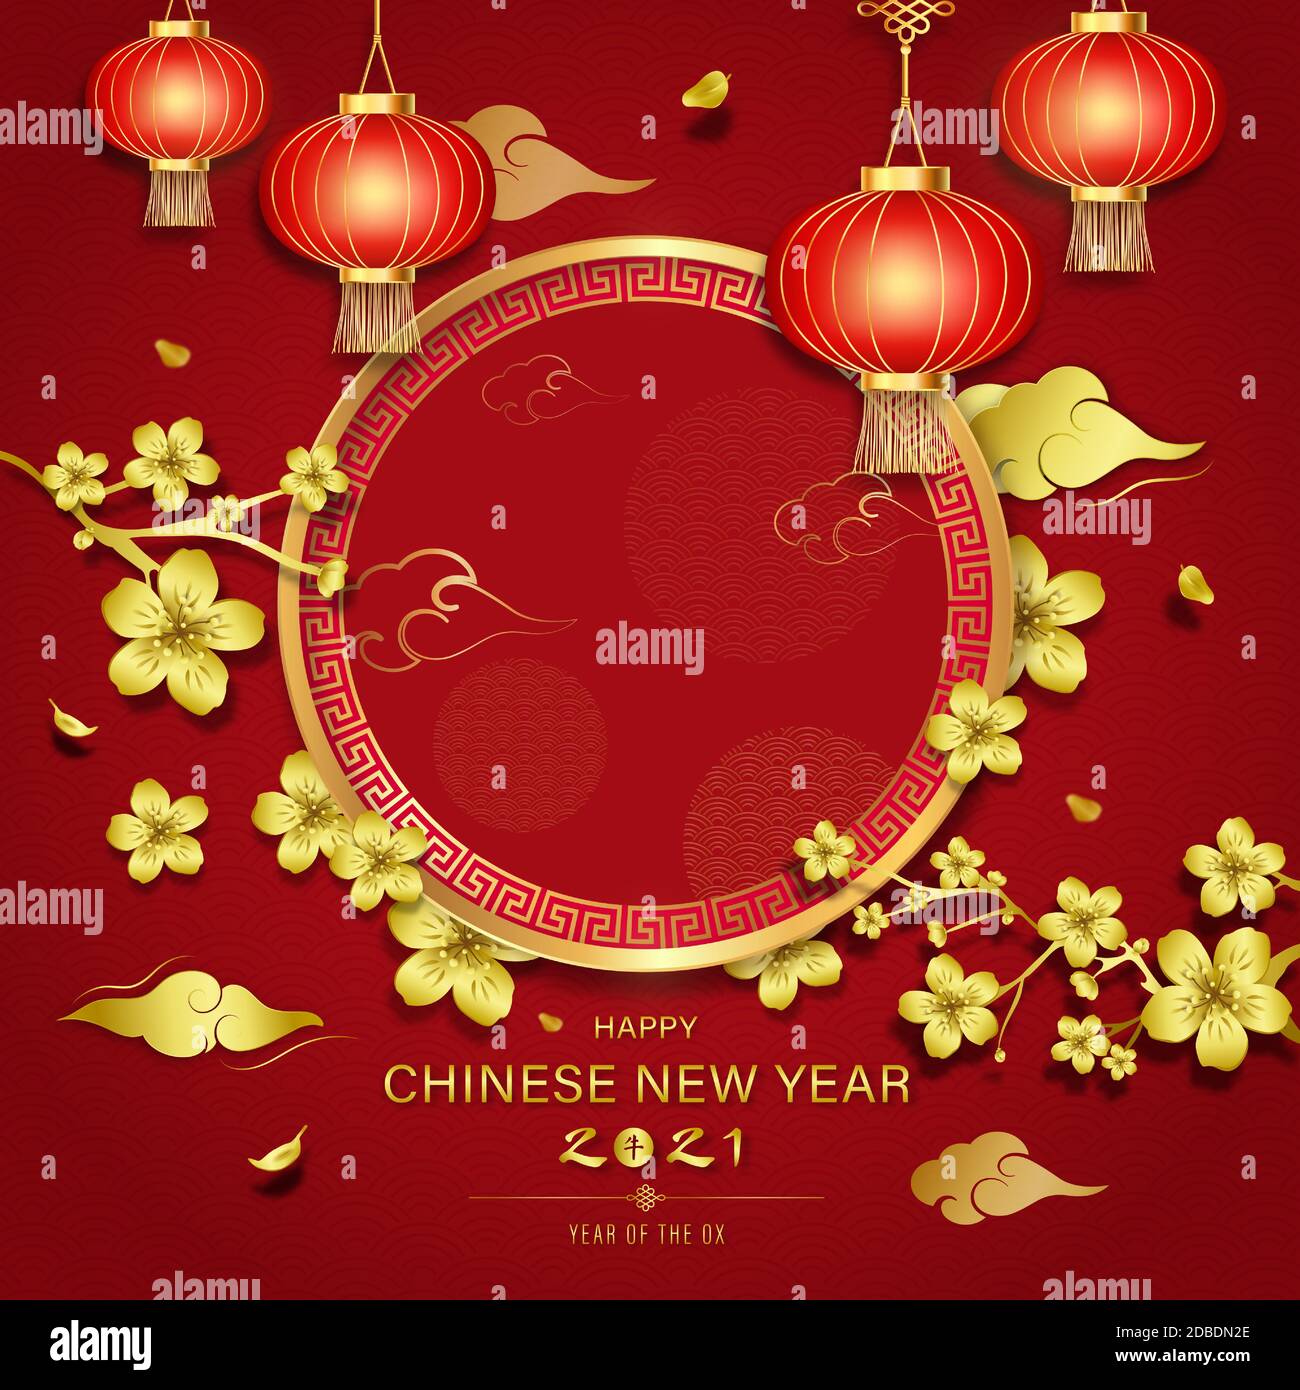 Happy Chinses texte du nouvel an et la lettre chinoise signifie ox pour l'année 2021 sur fond rouge de style oriental Illustration de Vecteur